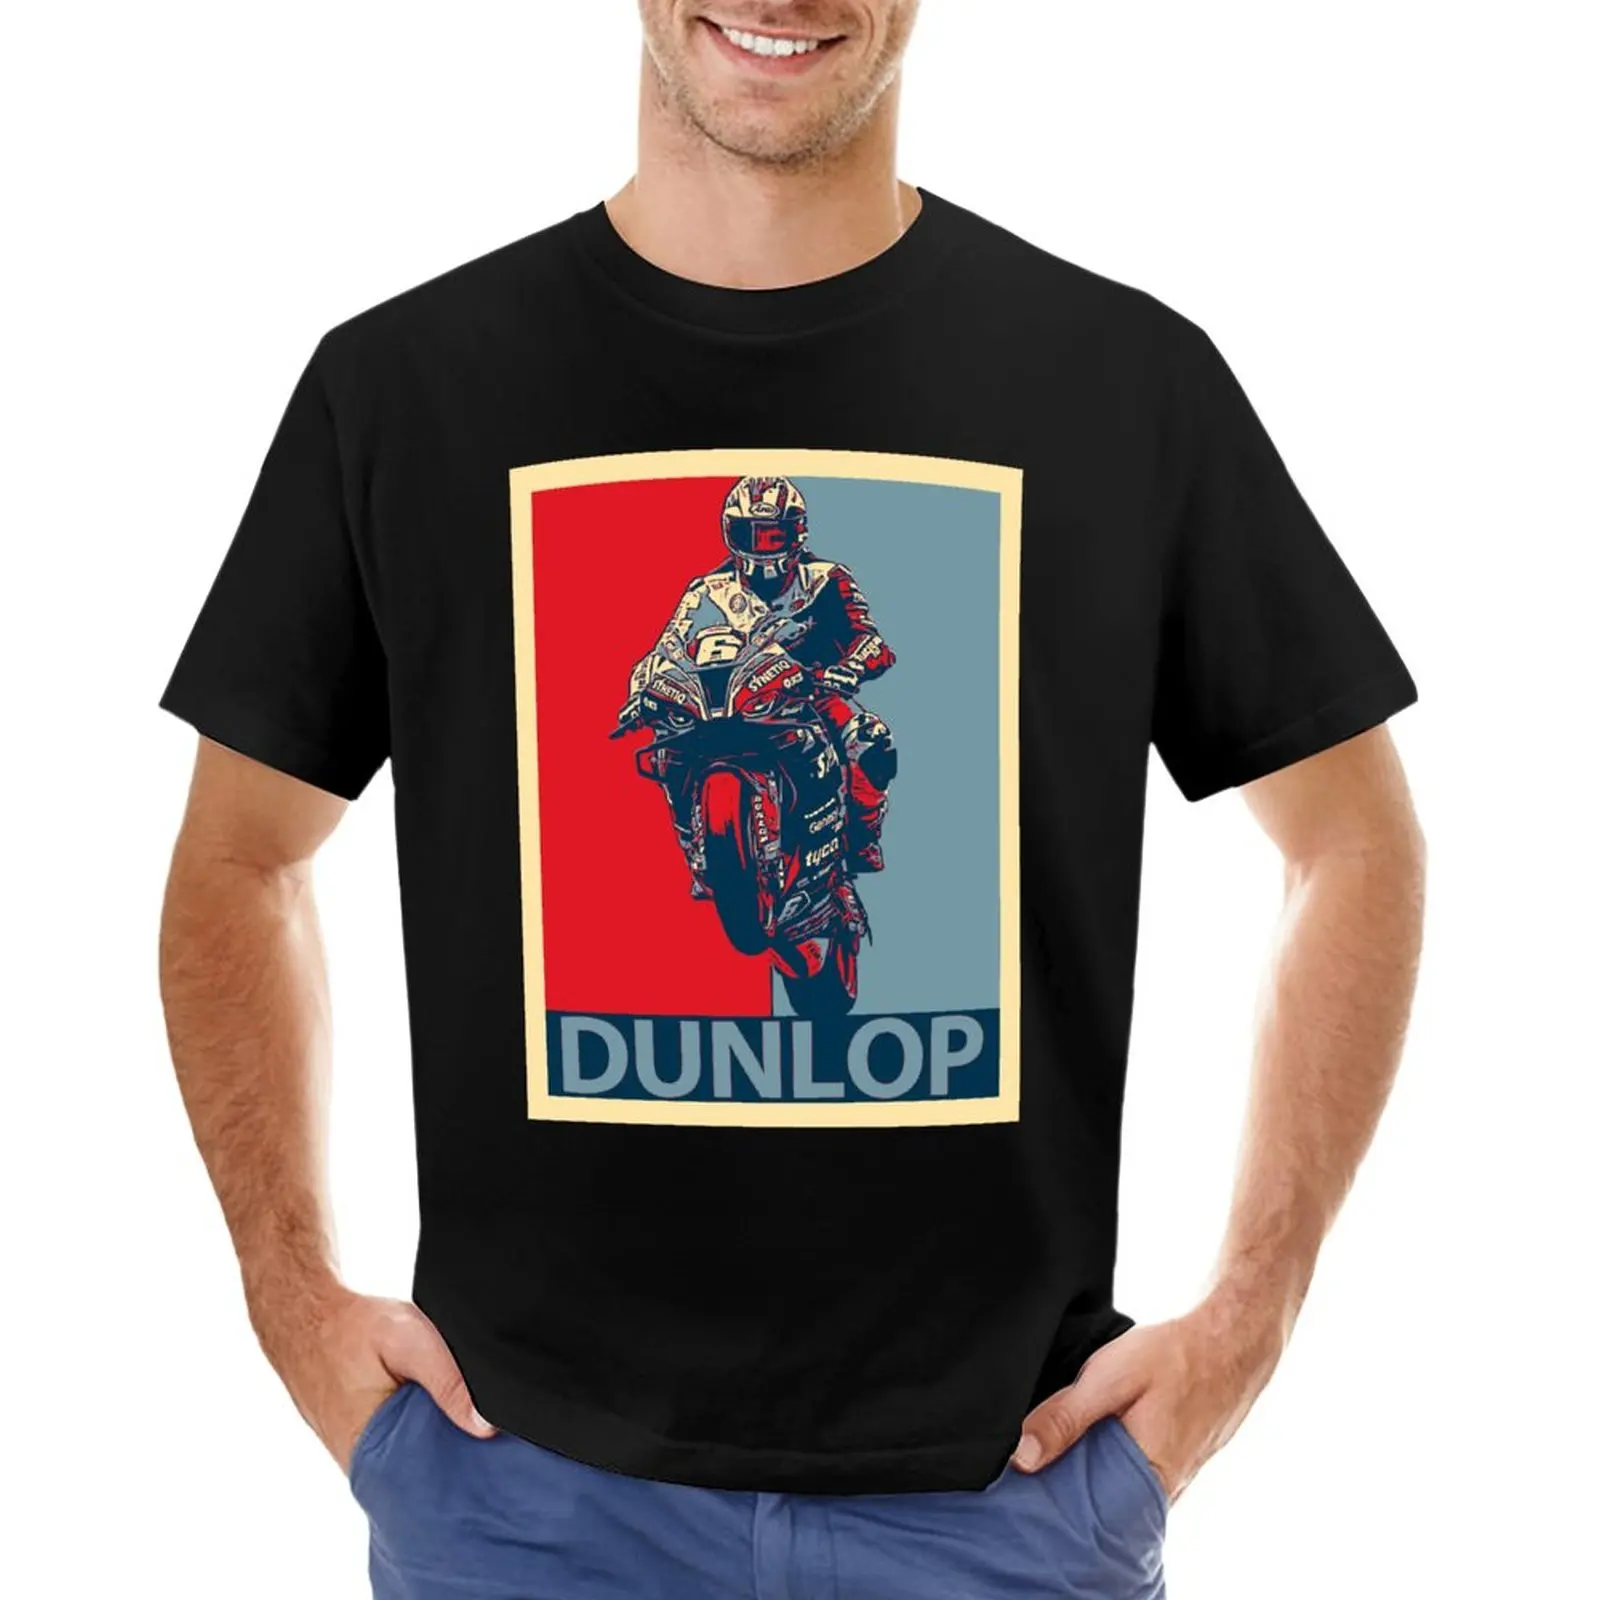 

Michael Dunlop T-Shirt Blouse plain slim fit t shirts for men